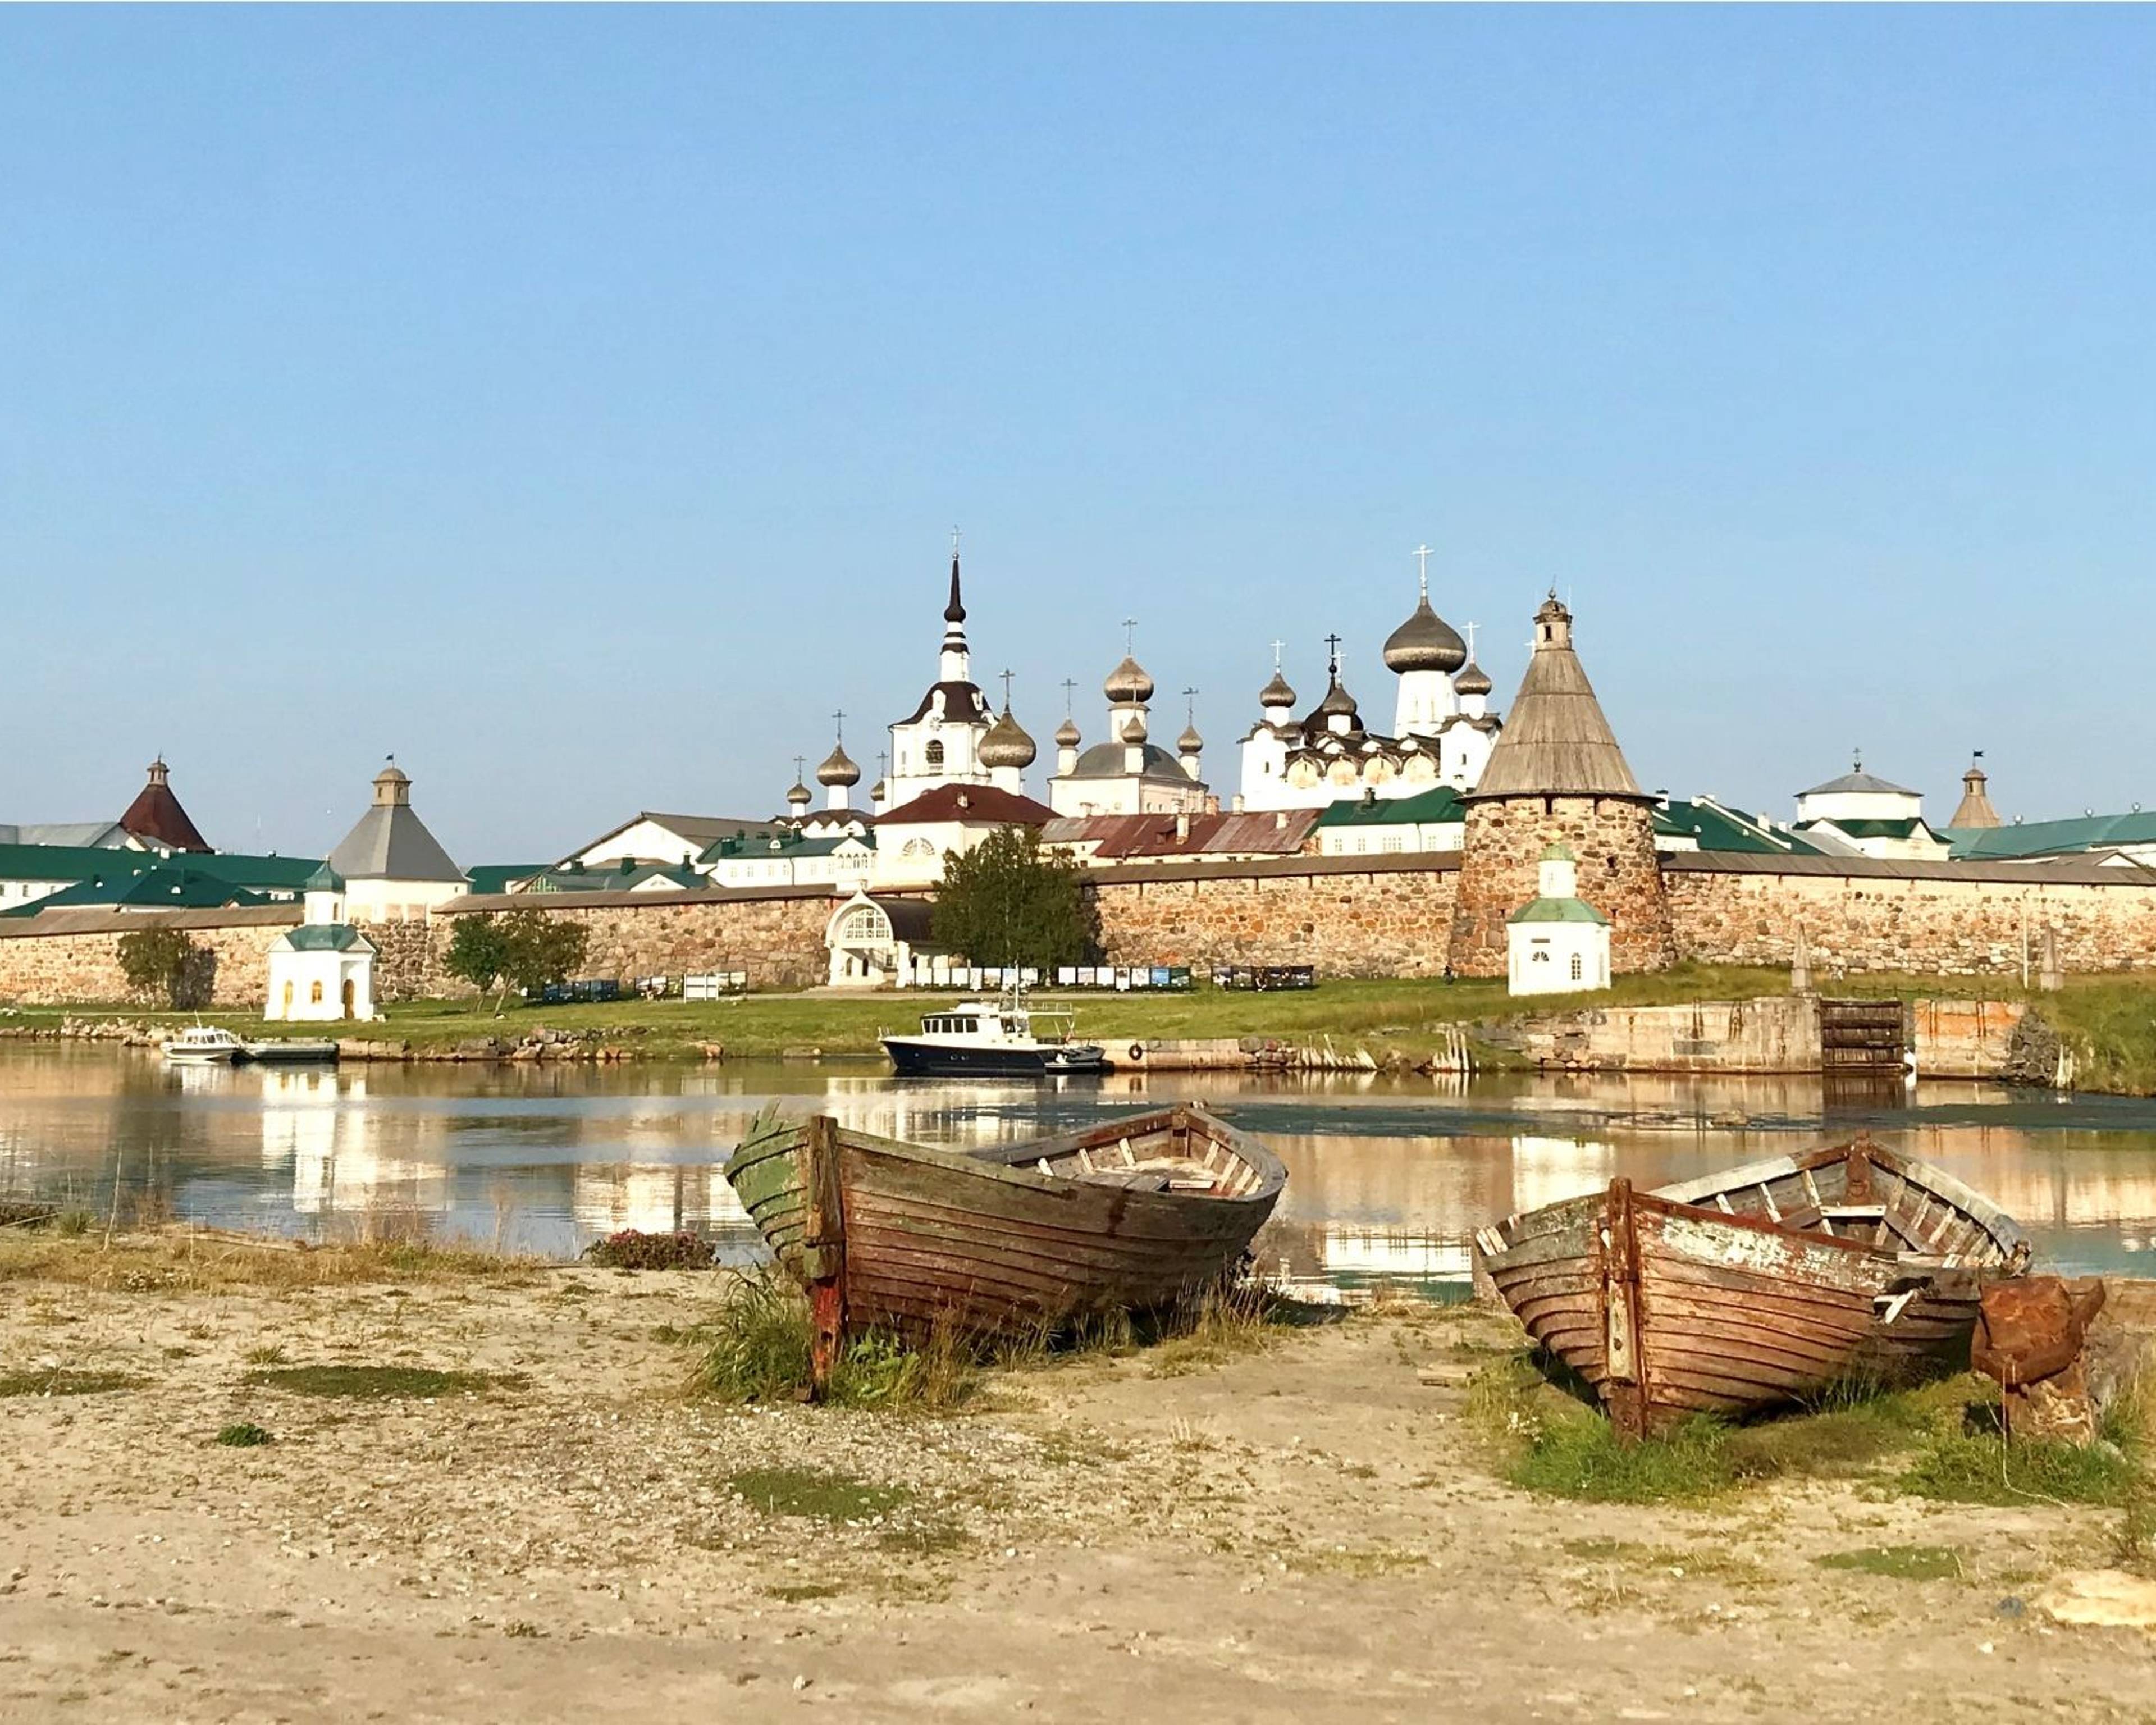 Le bellezze e gli enigmi del nord: San Pietroburgo e le isole Solovki